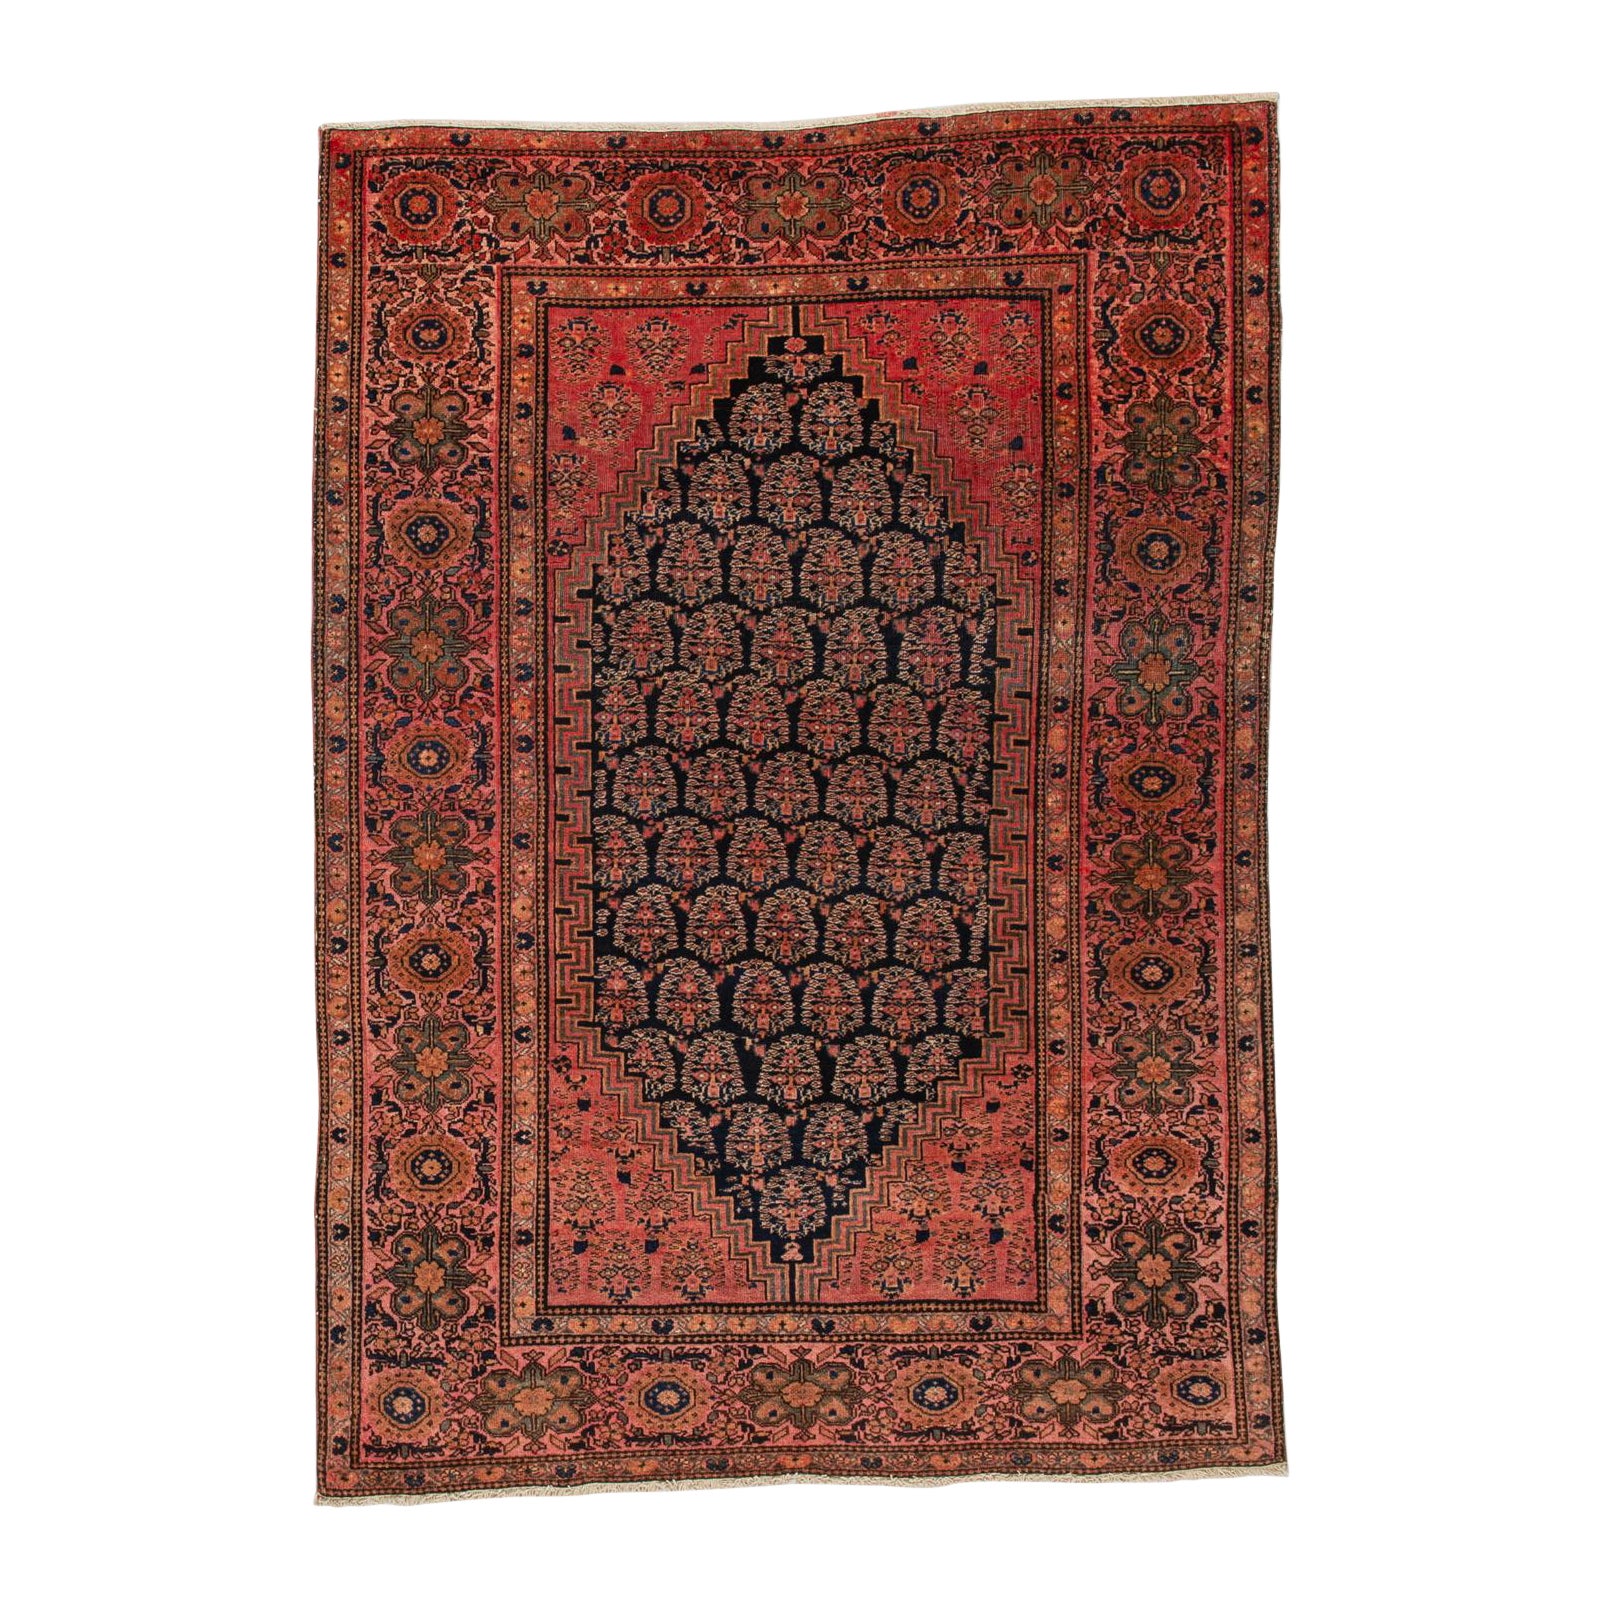 Seltener orientalischer Teppich aus Zentralasien